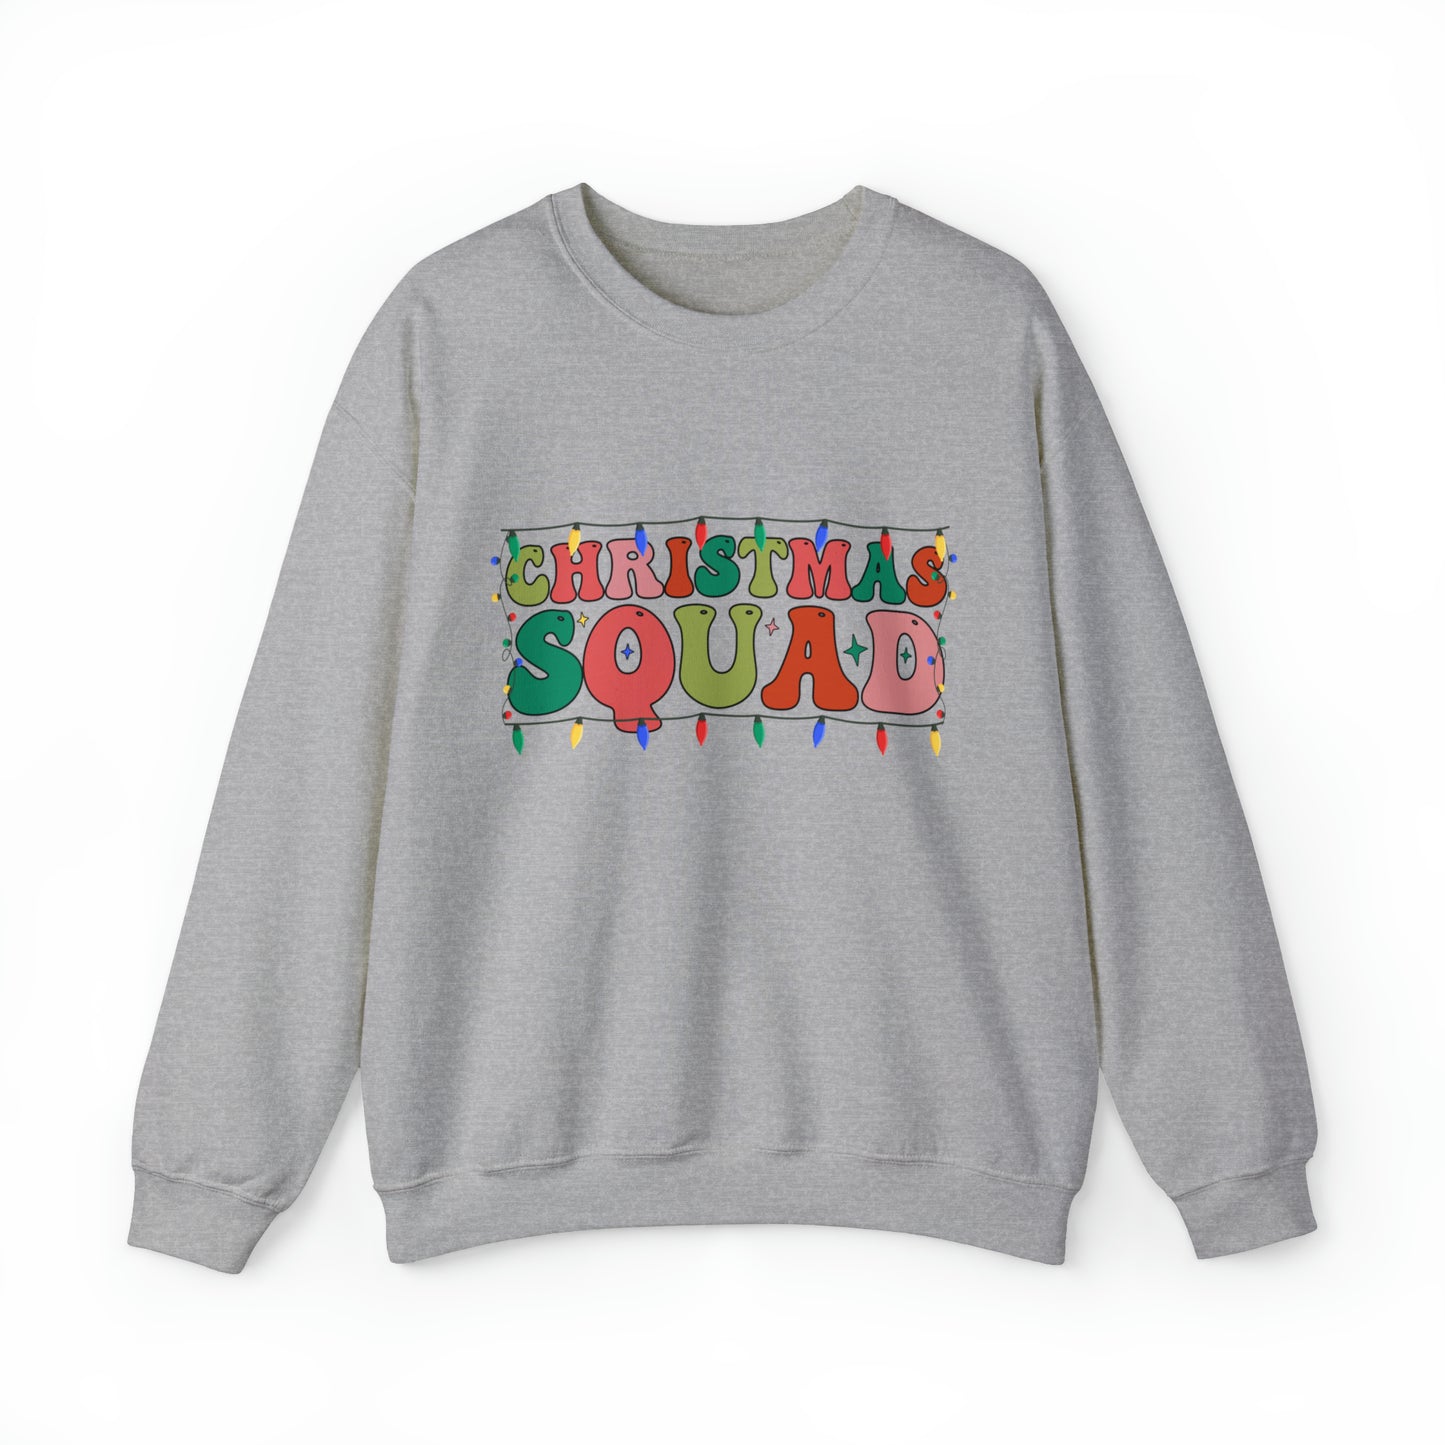 Christmas Squad Adult Family Group Santa Christmas Crewneck Sweatshirt